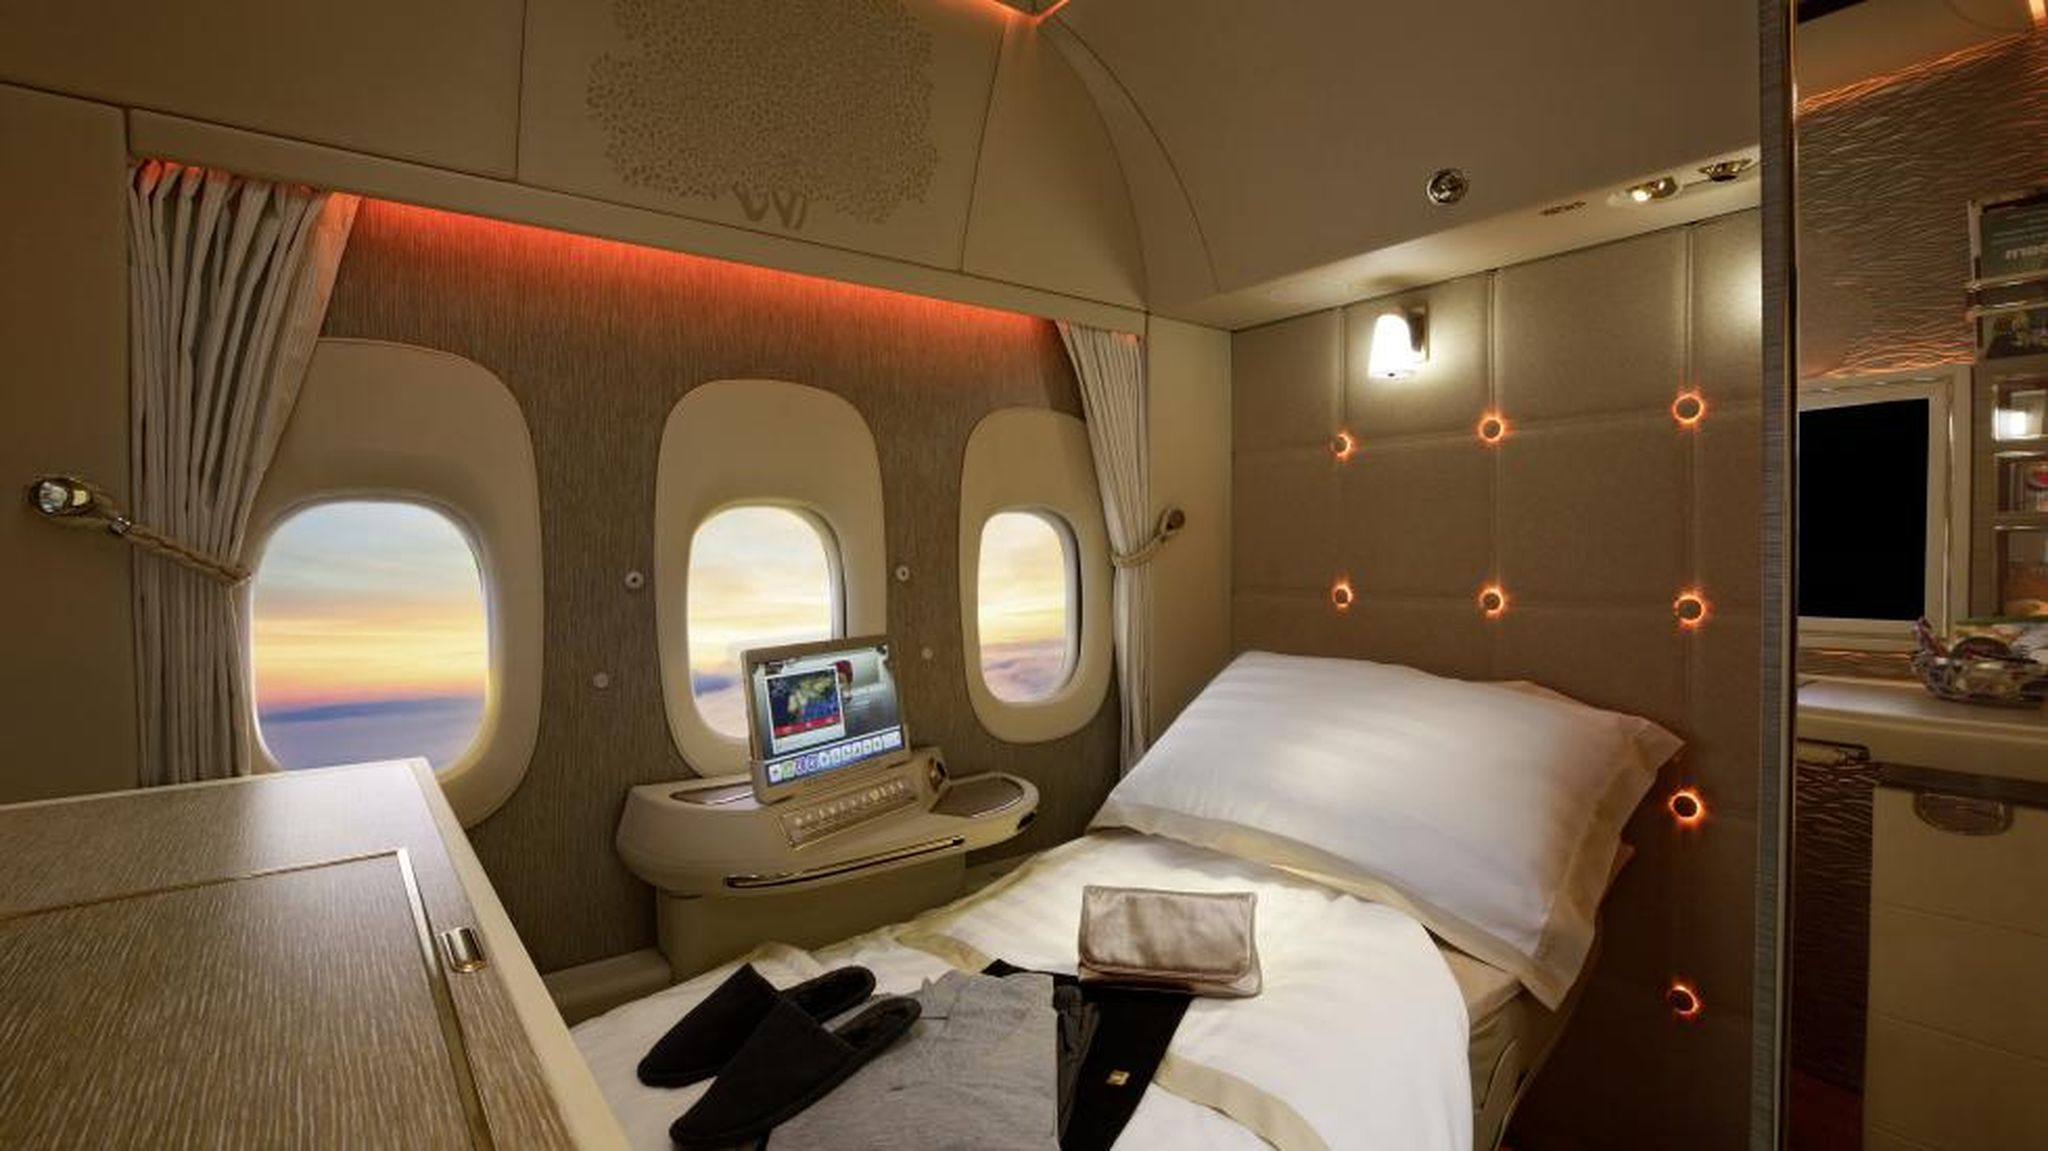 Cabina de avión Mercedes y Emirates